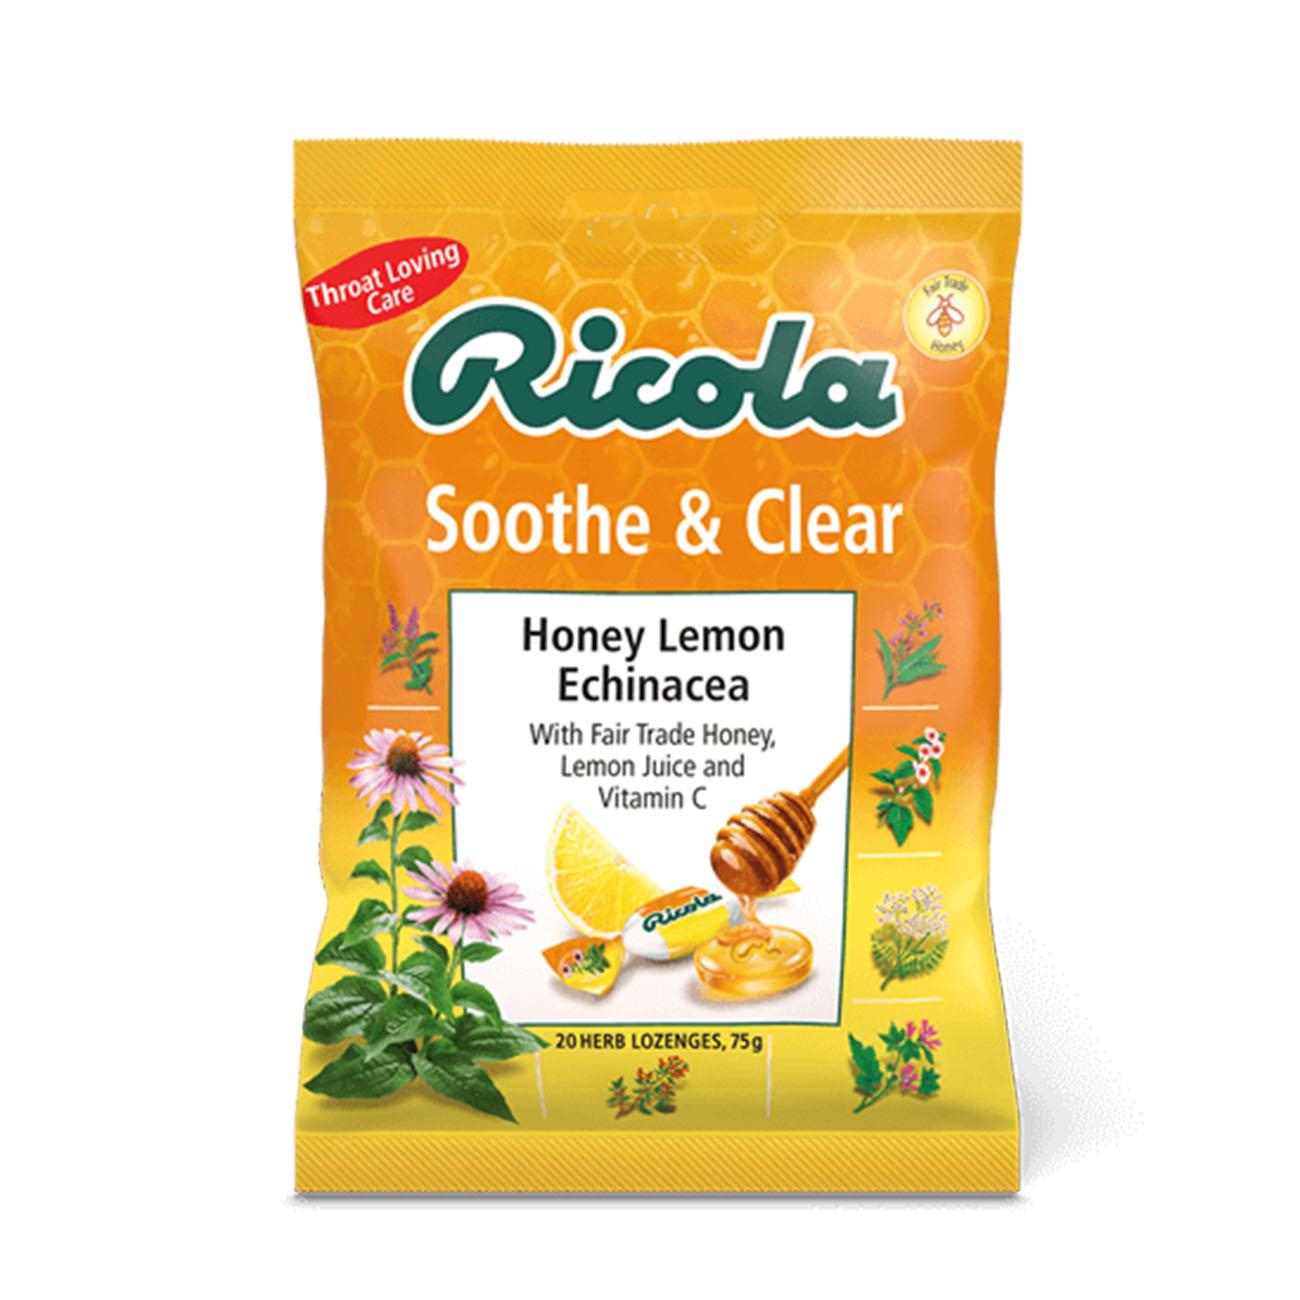 Soothe & Clear Honey Lemon Echinacea Herbal Lozenges 75g